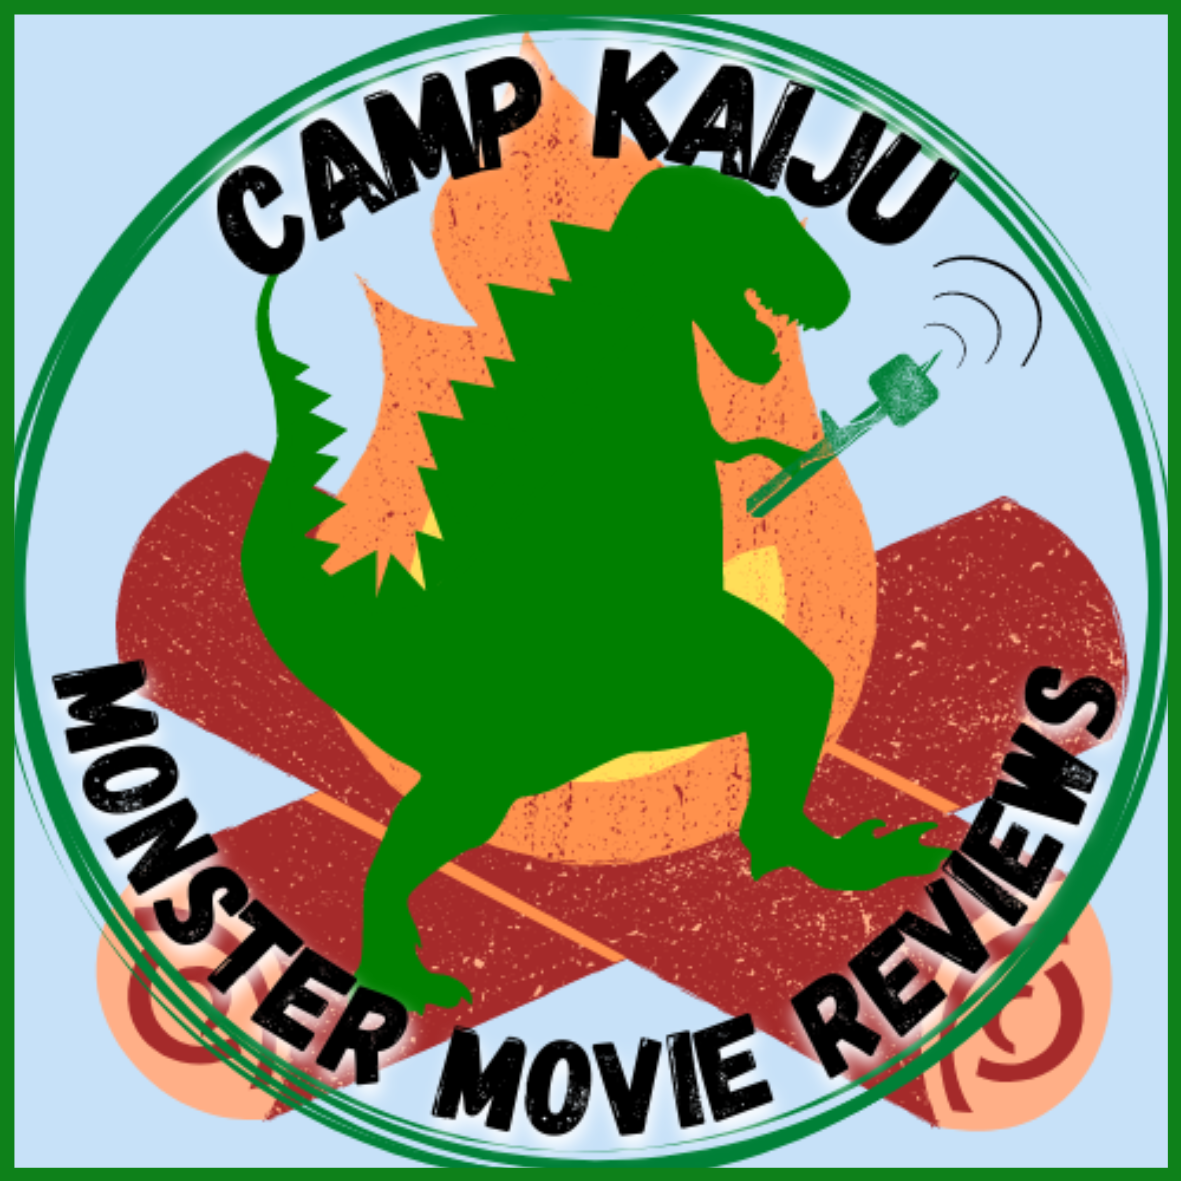 Camp Kaiju: Monster Movie Reviews